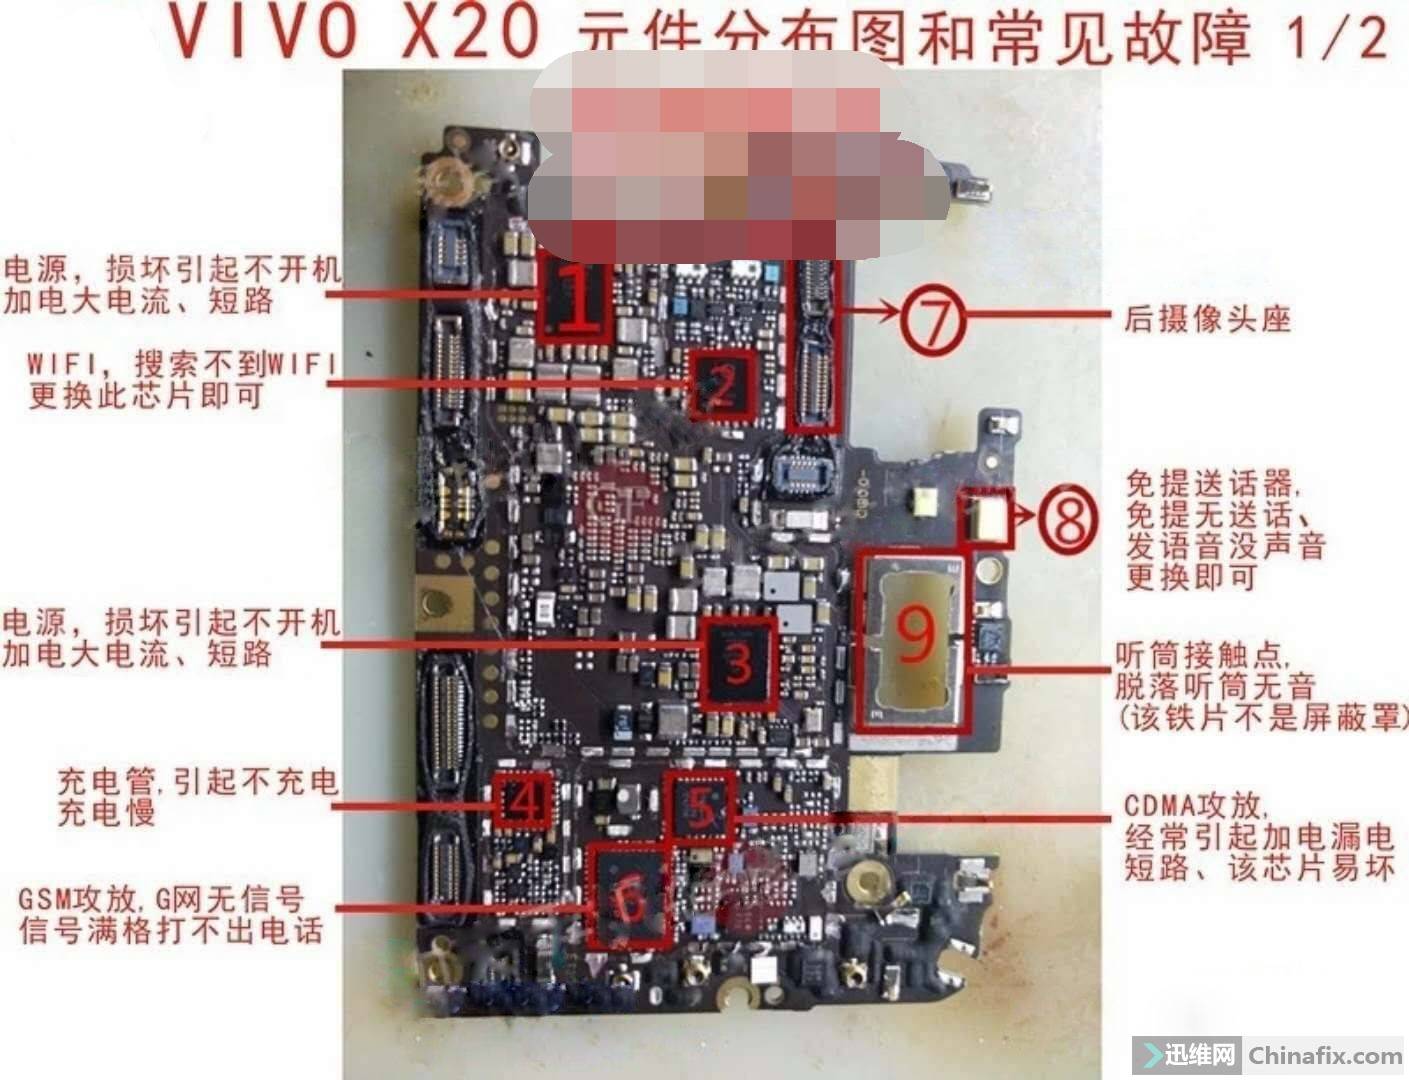 vivox20主板元件分布图图片